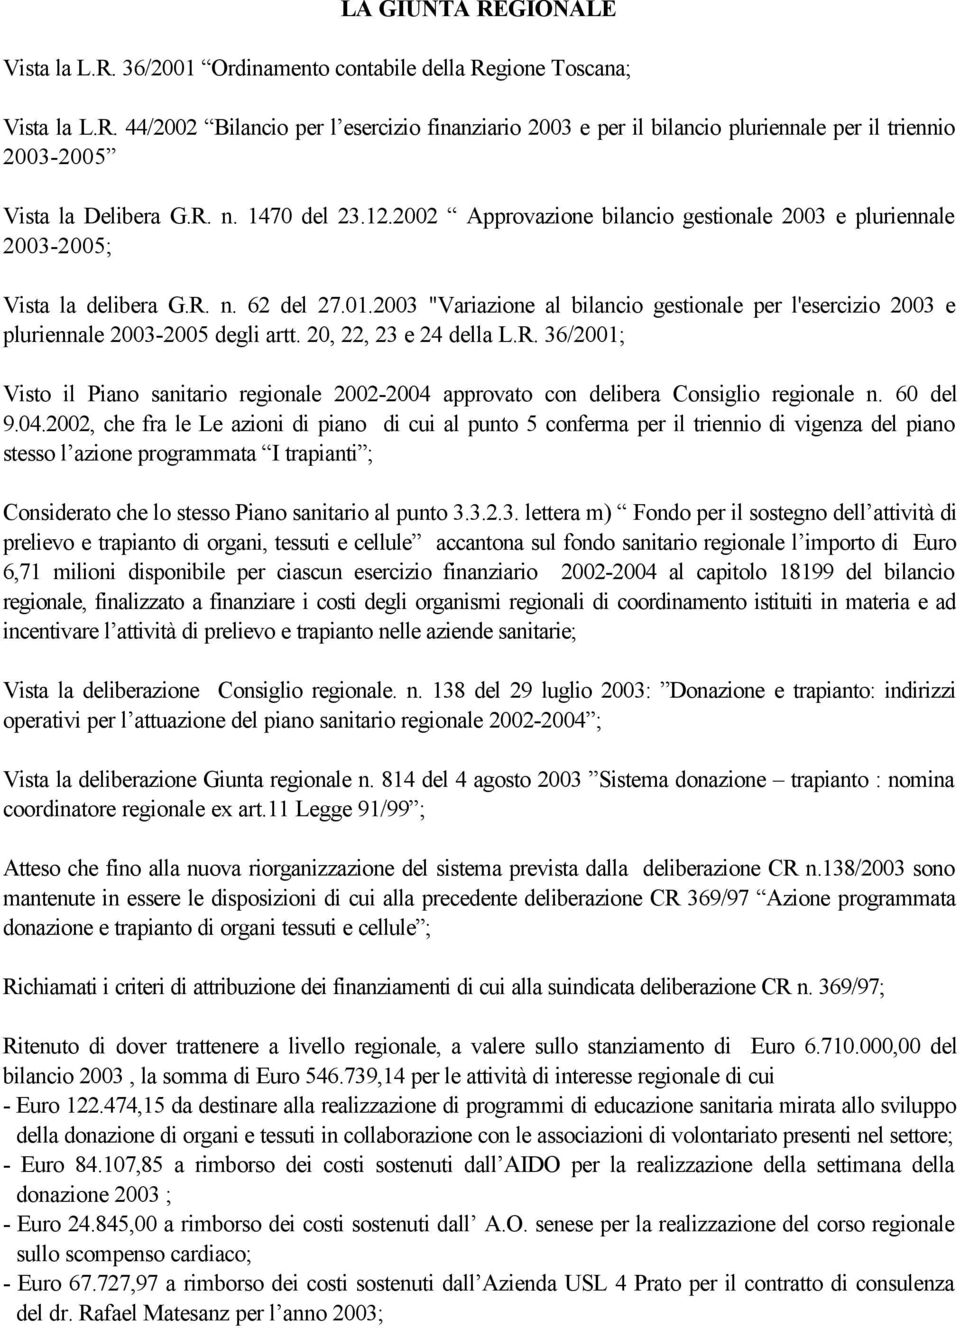 2003 "Variazione al bilancio gestionale per l'esercizio 2003 e pluriennale 2003-2005 degli artt. 20, 22, 23 e 24 della L.R.